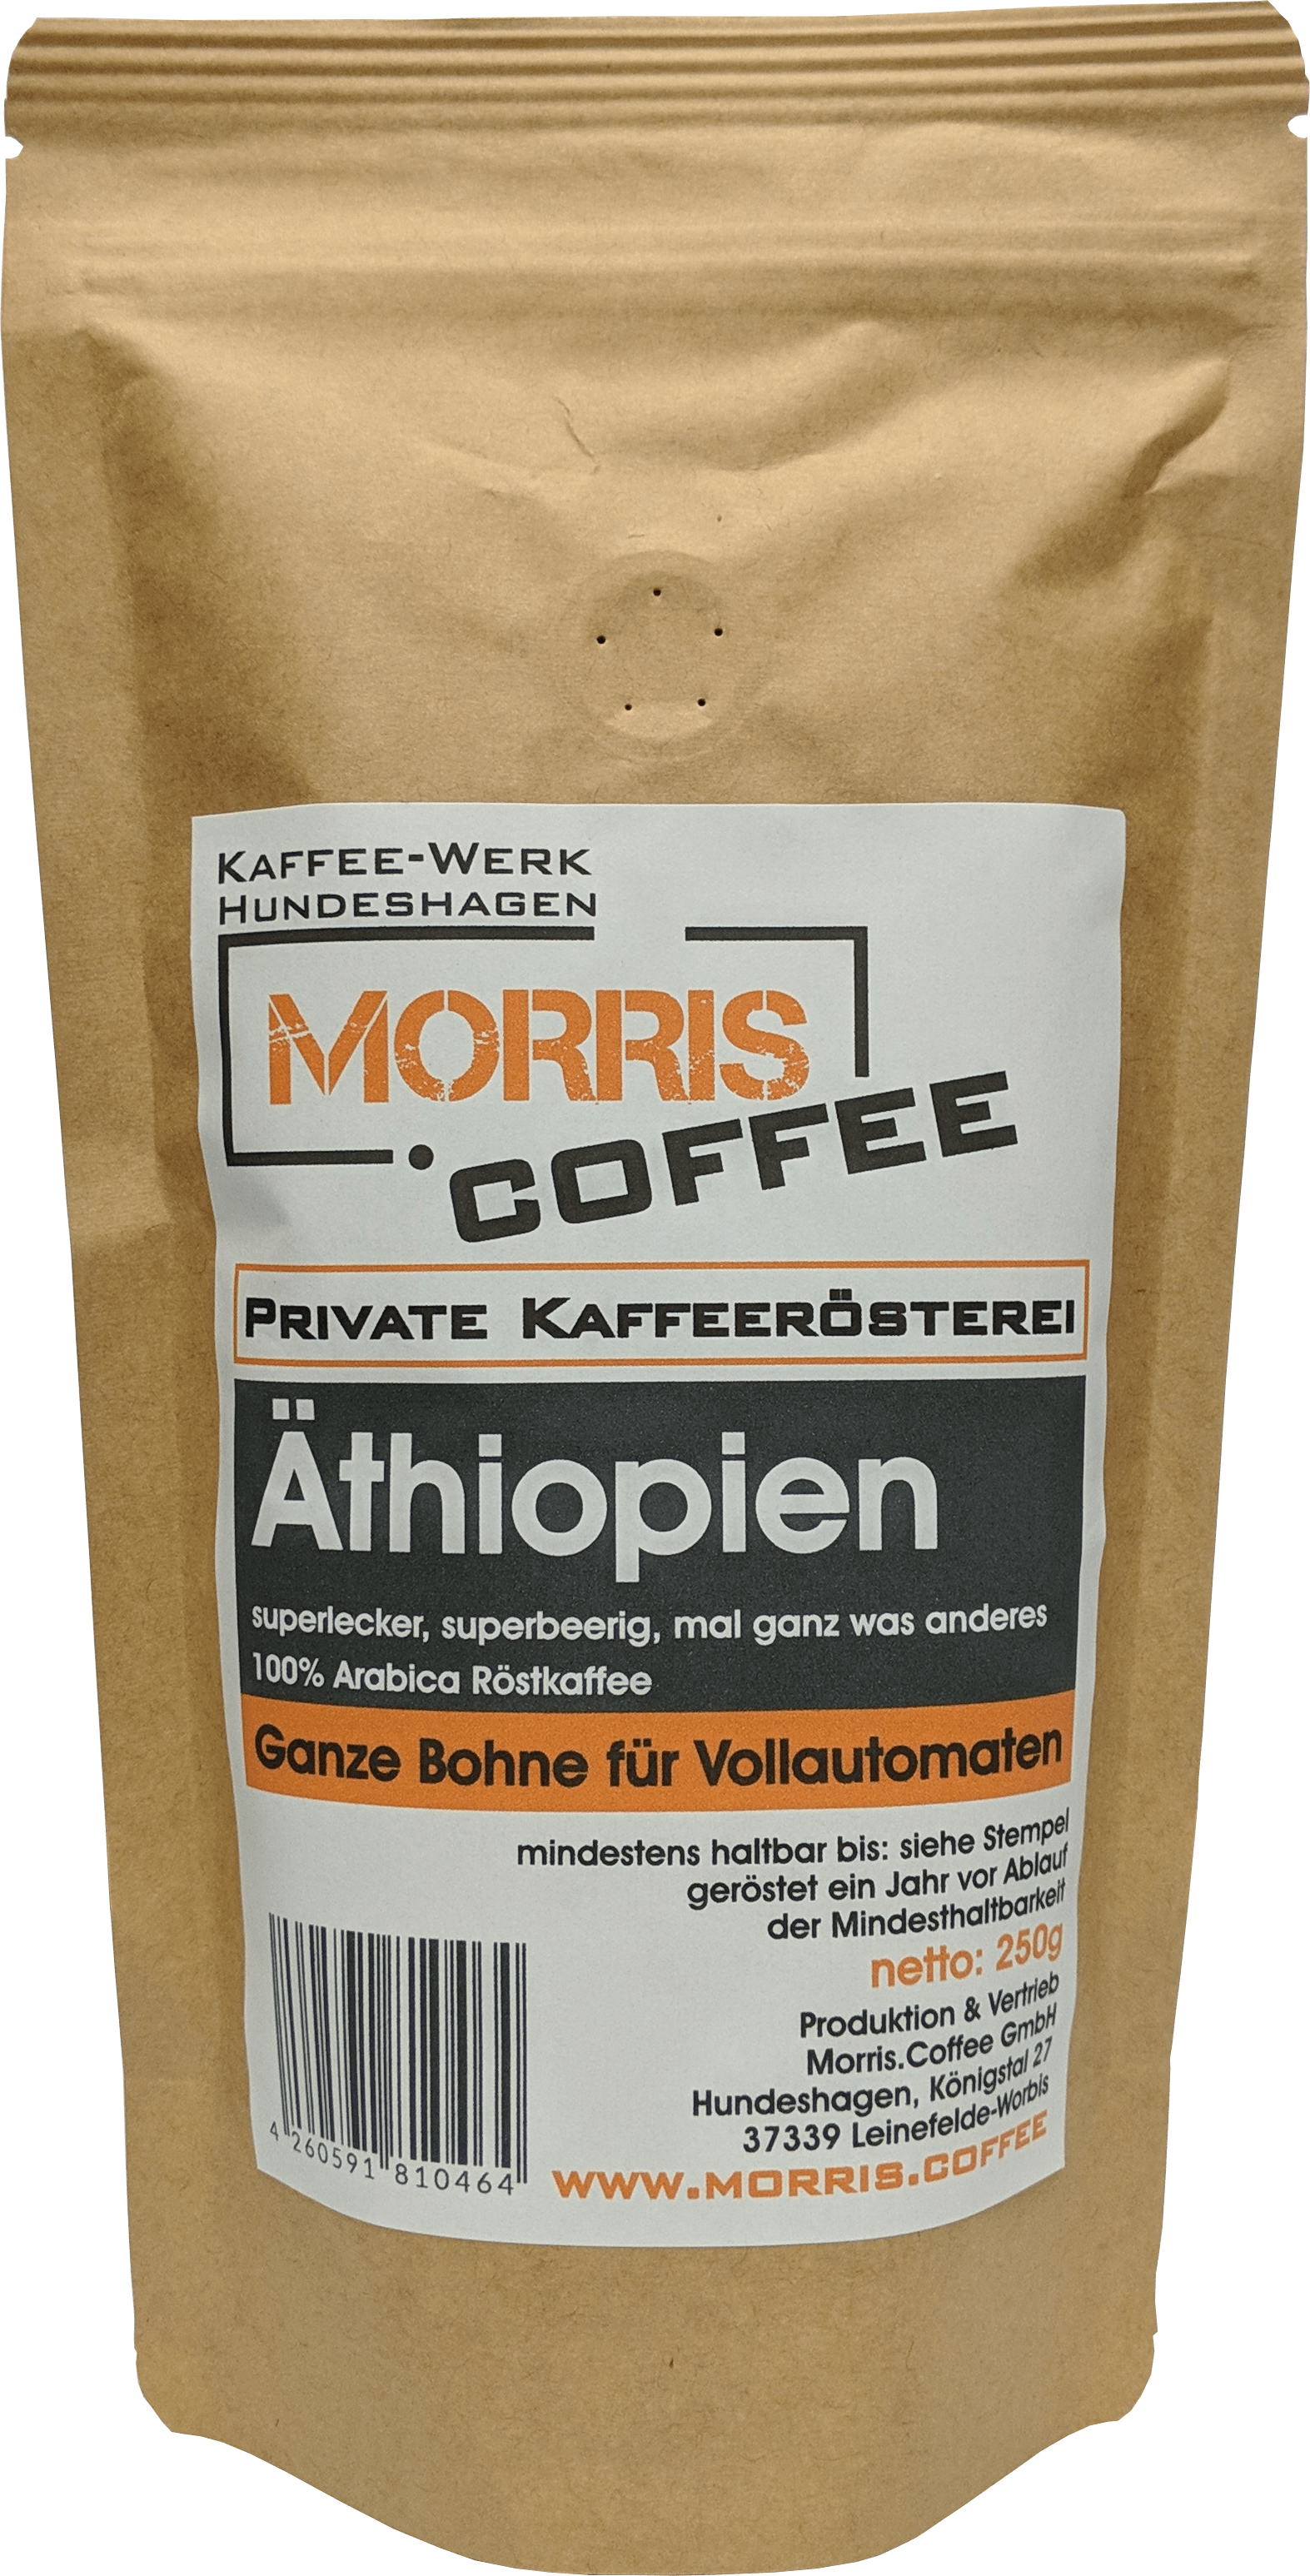 Kaffee aus Äthiopien - 250 g - ganze Bohne